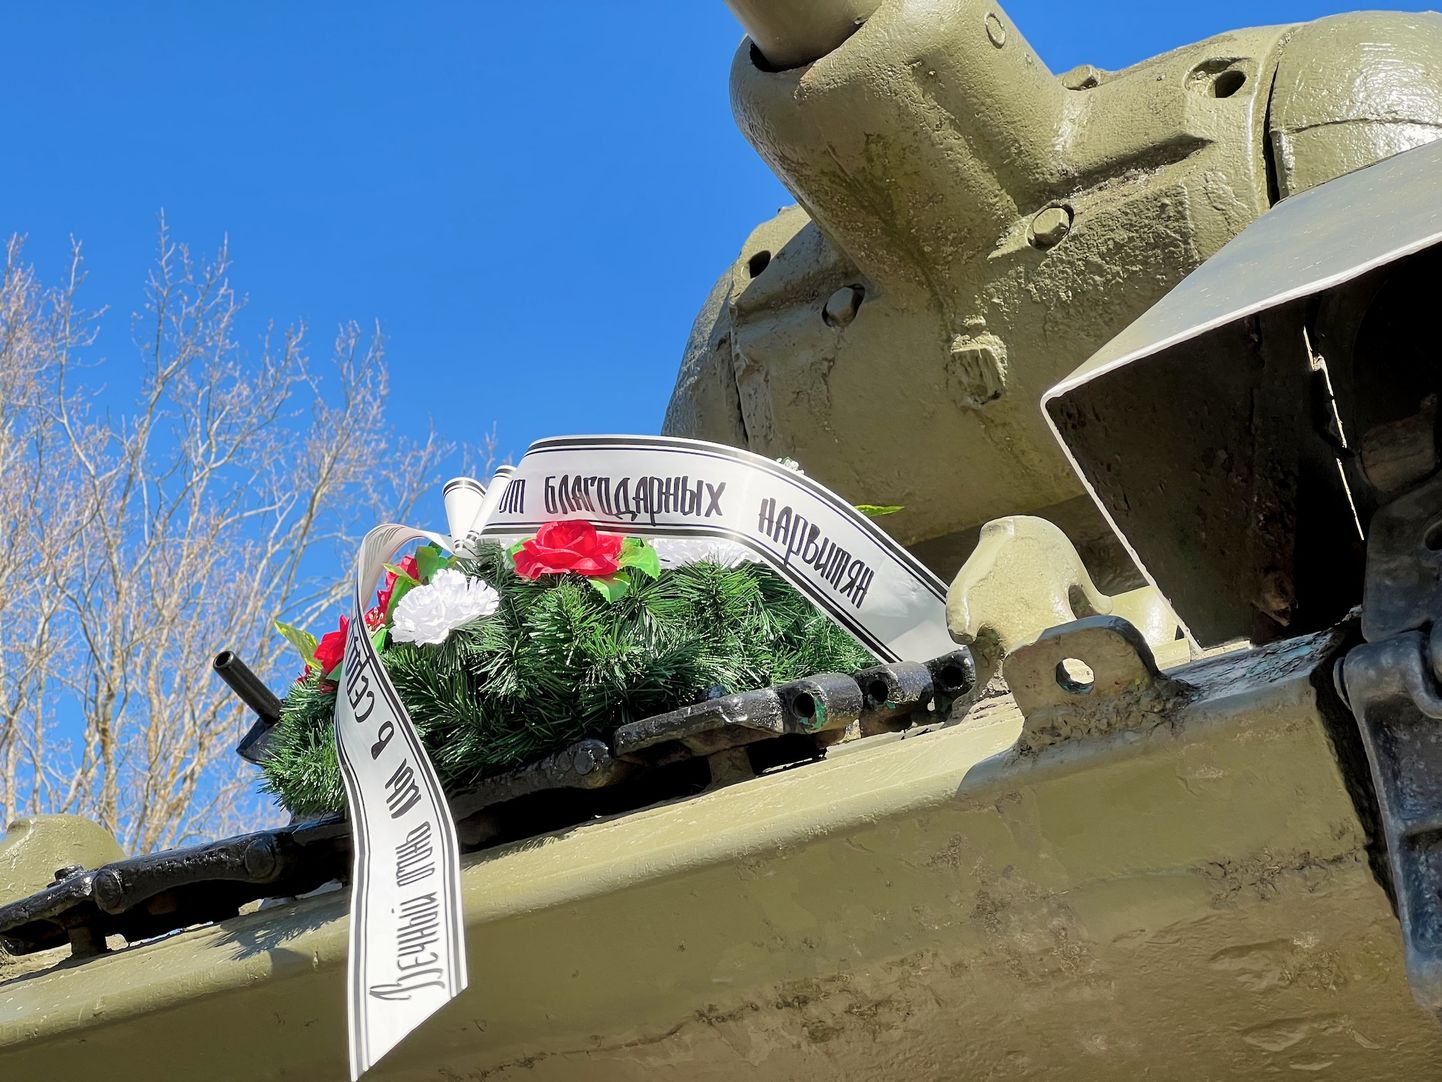 "Tänulikelt narvalastelt" − kiri Narva tankimonumendile asetatud pärja lindil.